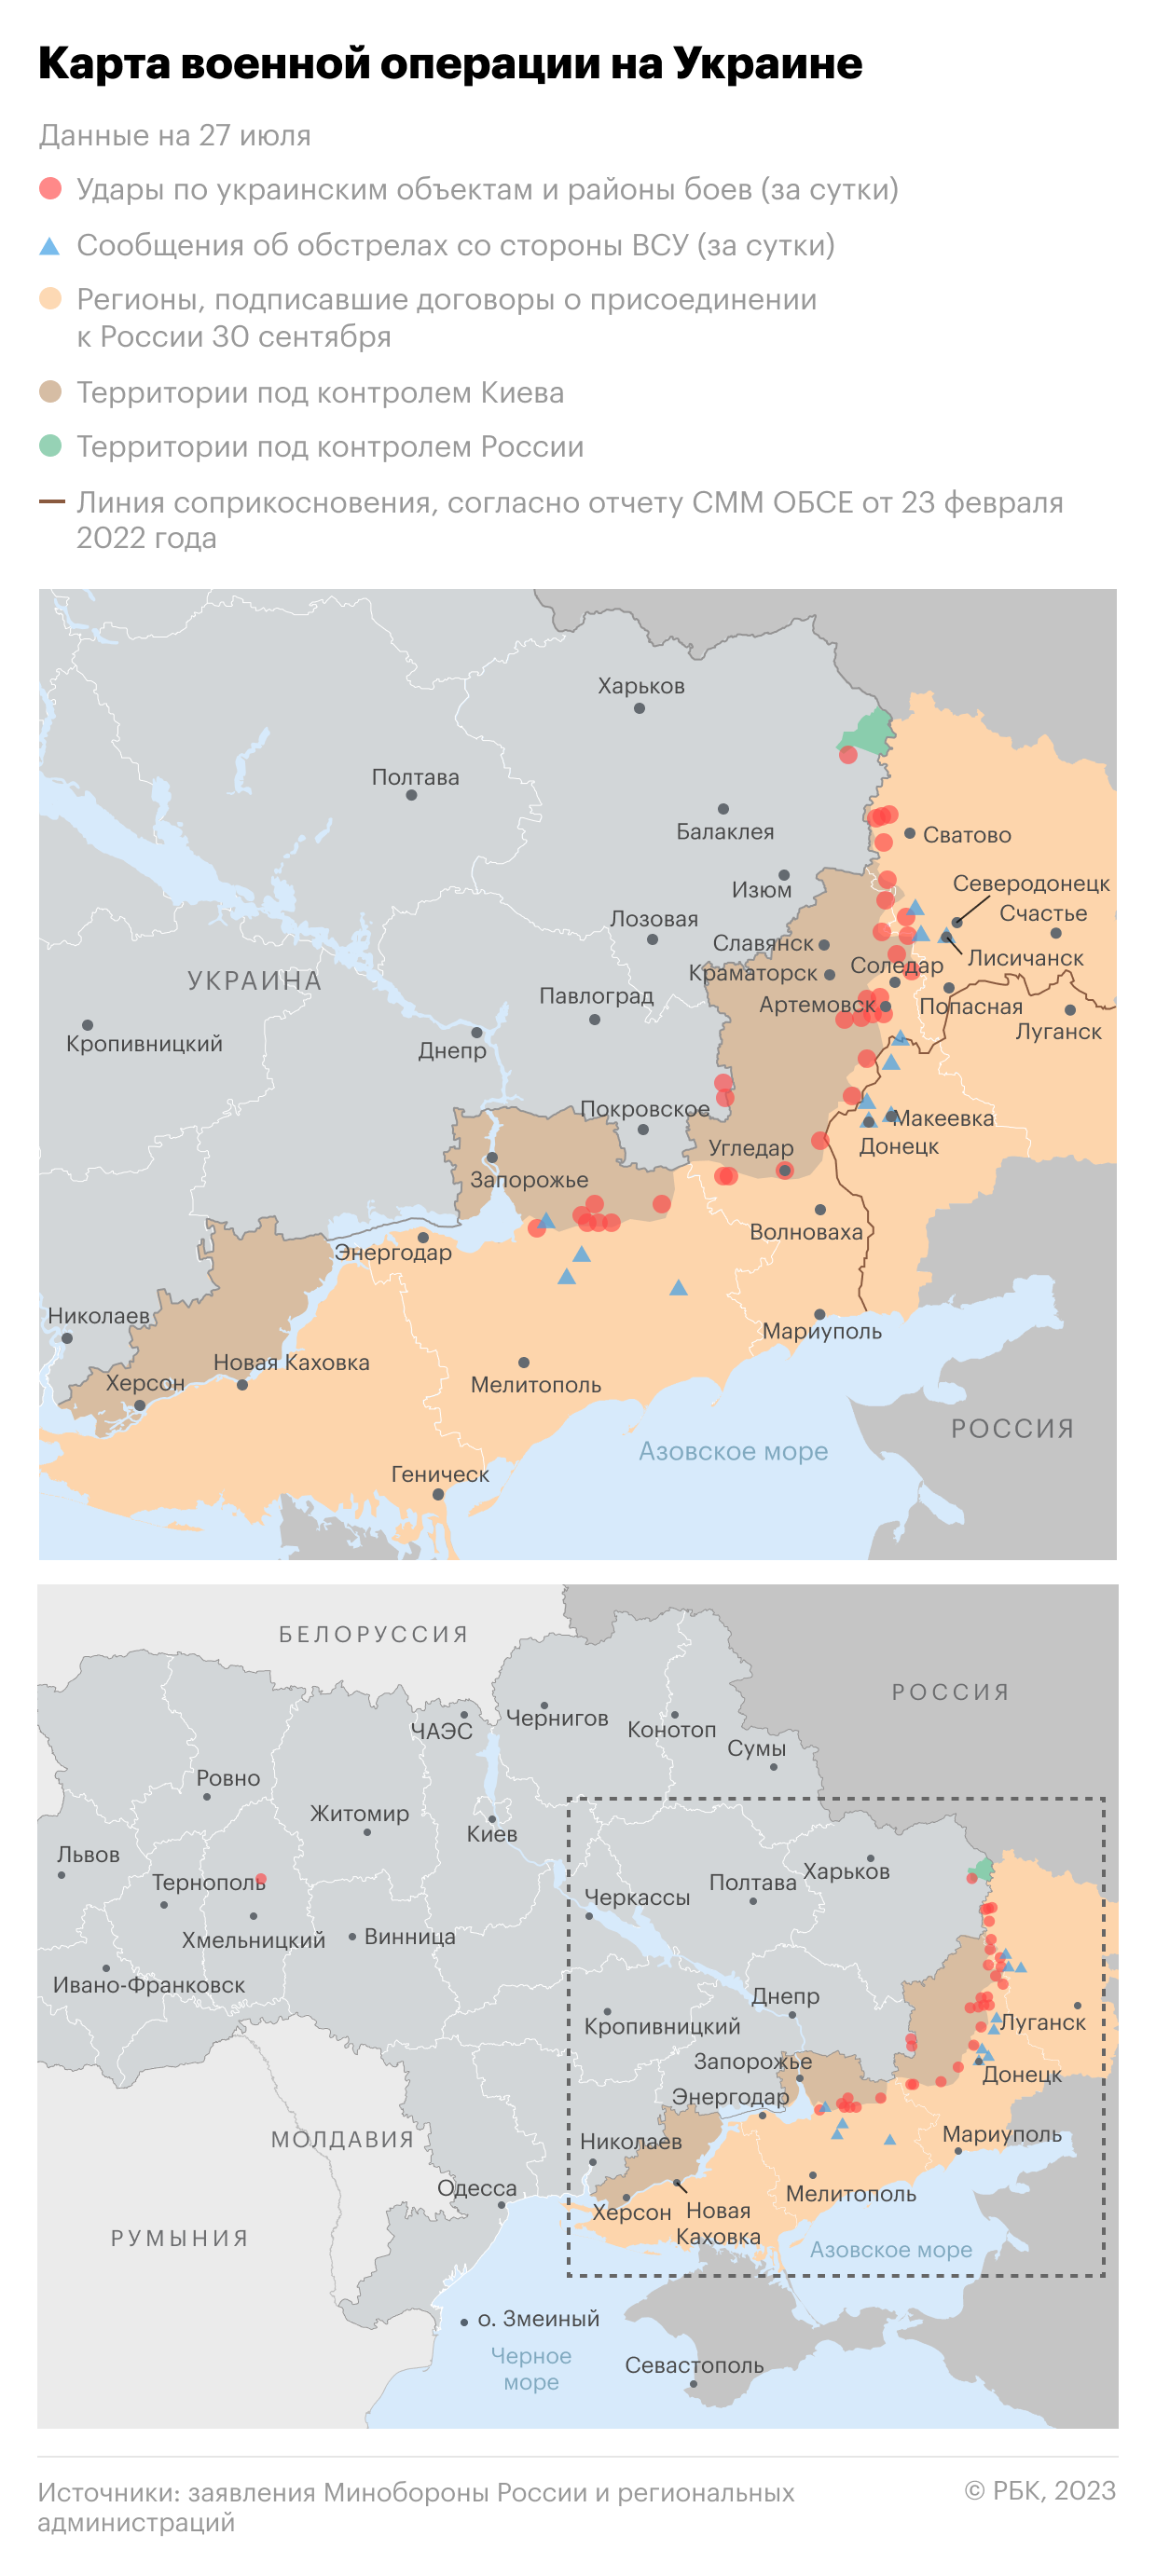 Военная операция на Украине. Карта на 27 июля